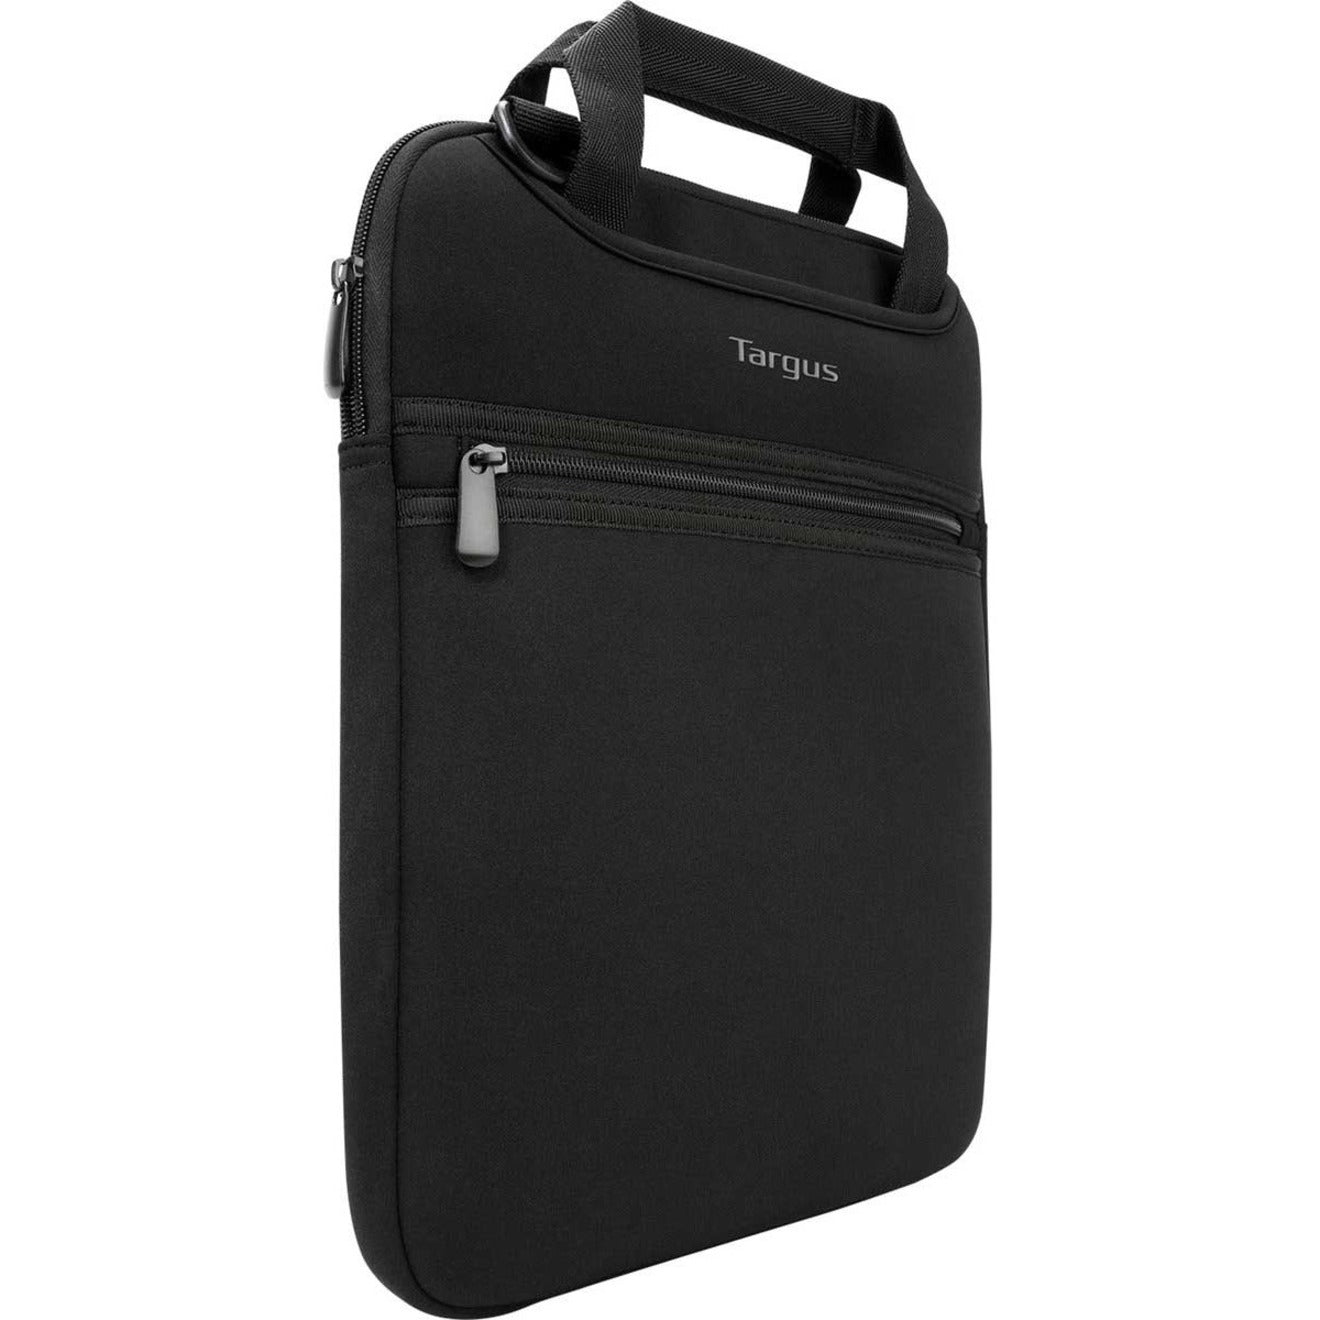 Targus TSS913 Slipcase Carrying Case for 14" Notebook, Black